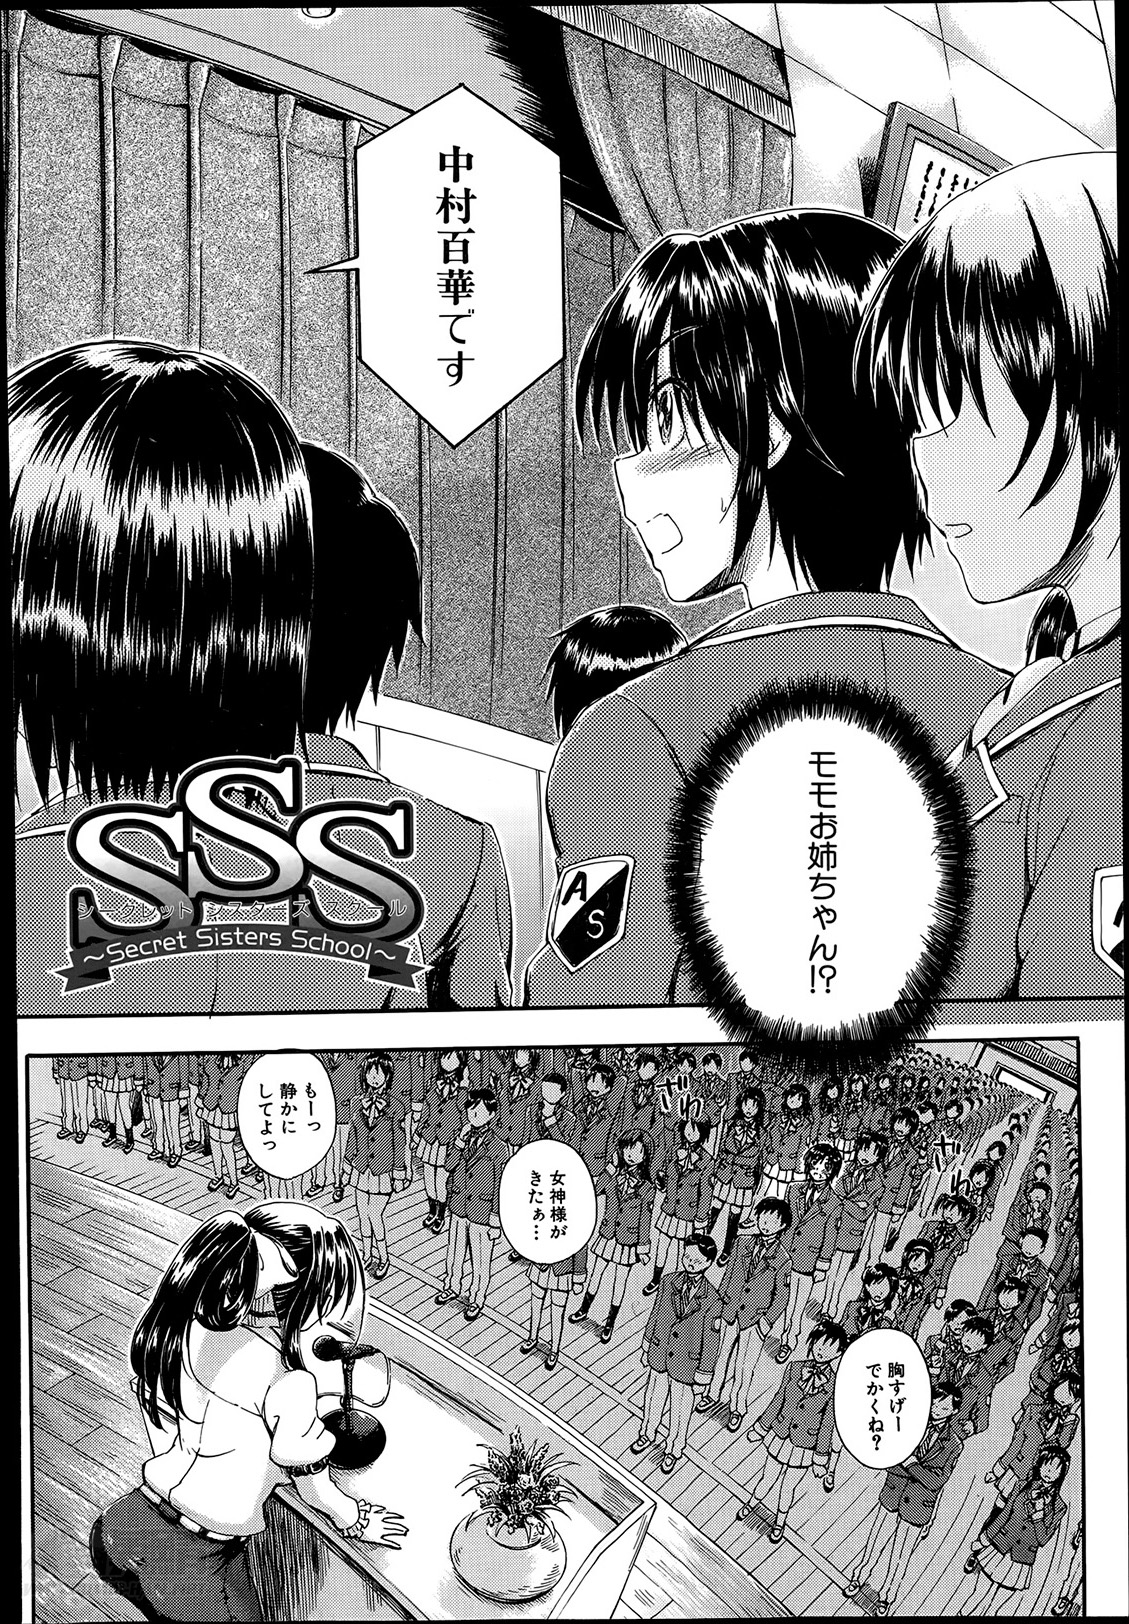 [Maekawa Hayato] SSS Ch.1-3 page 2 full